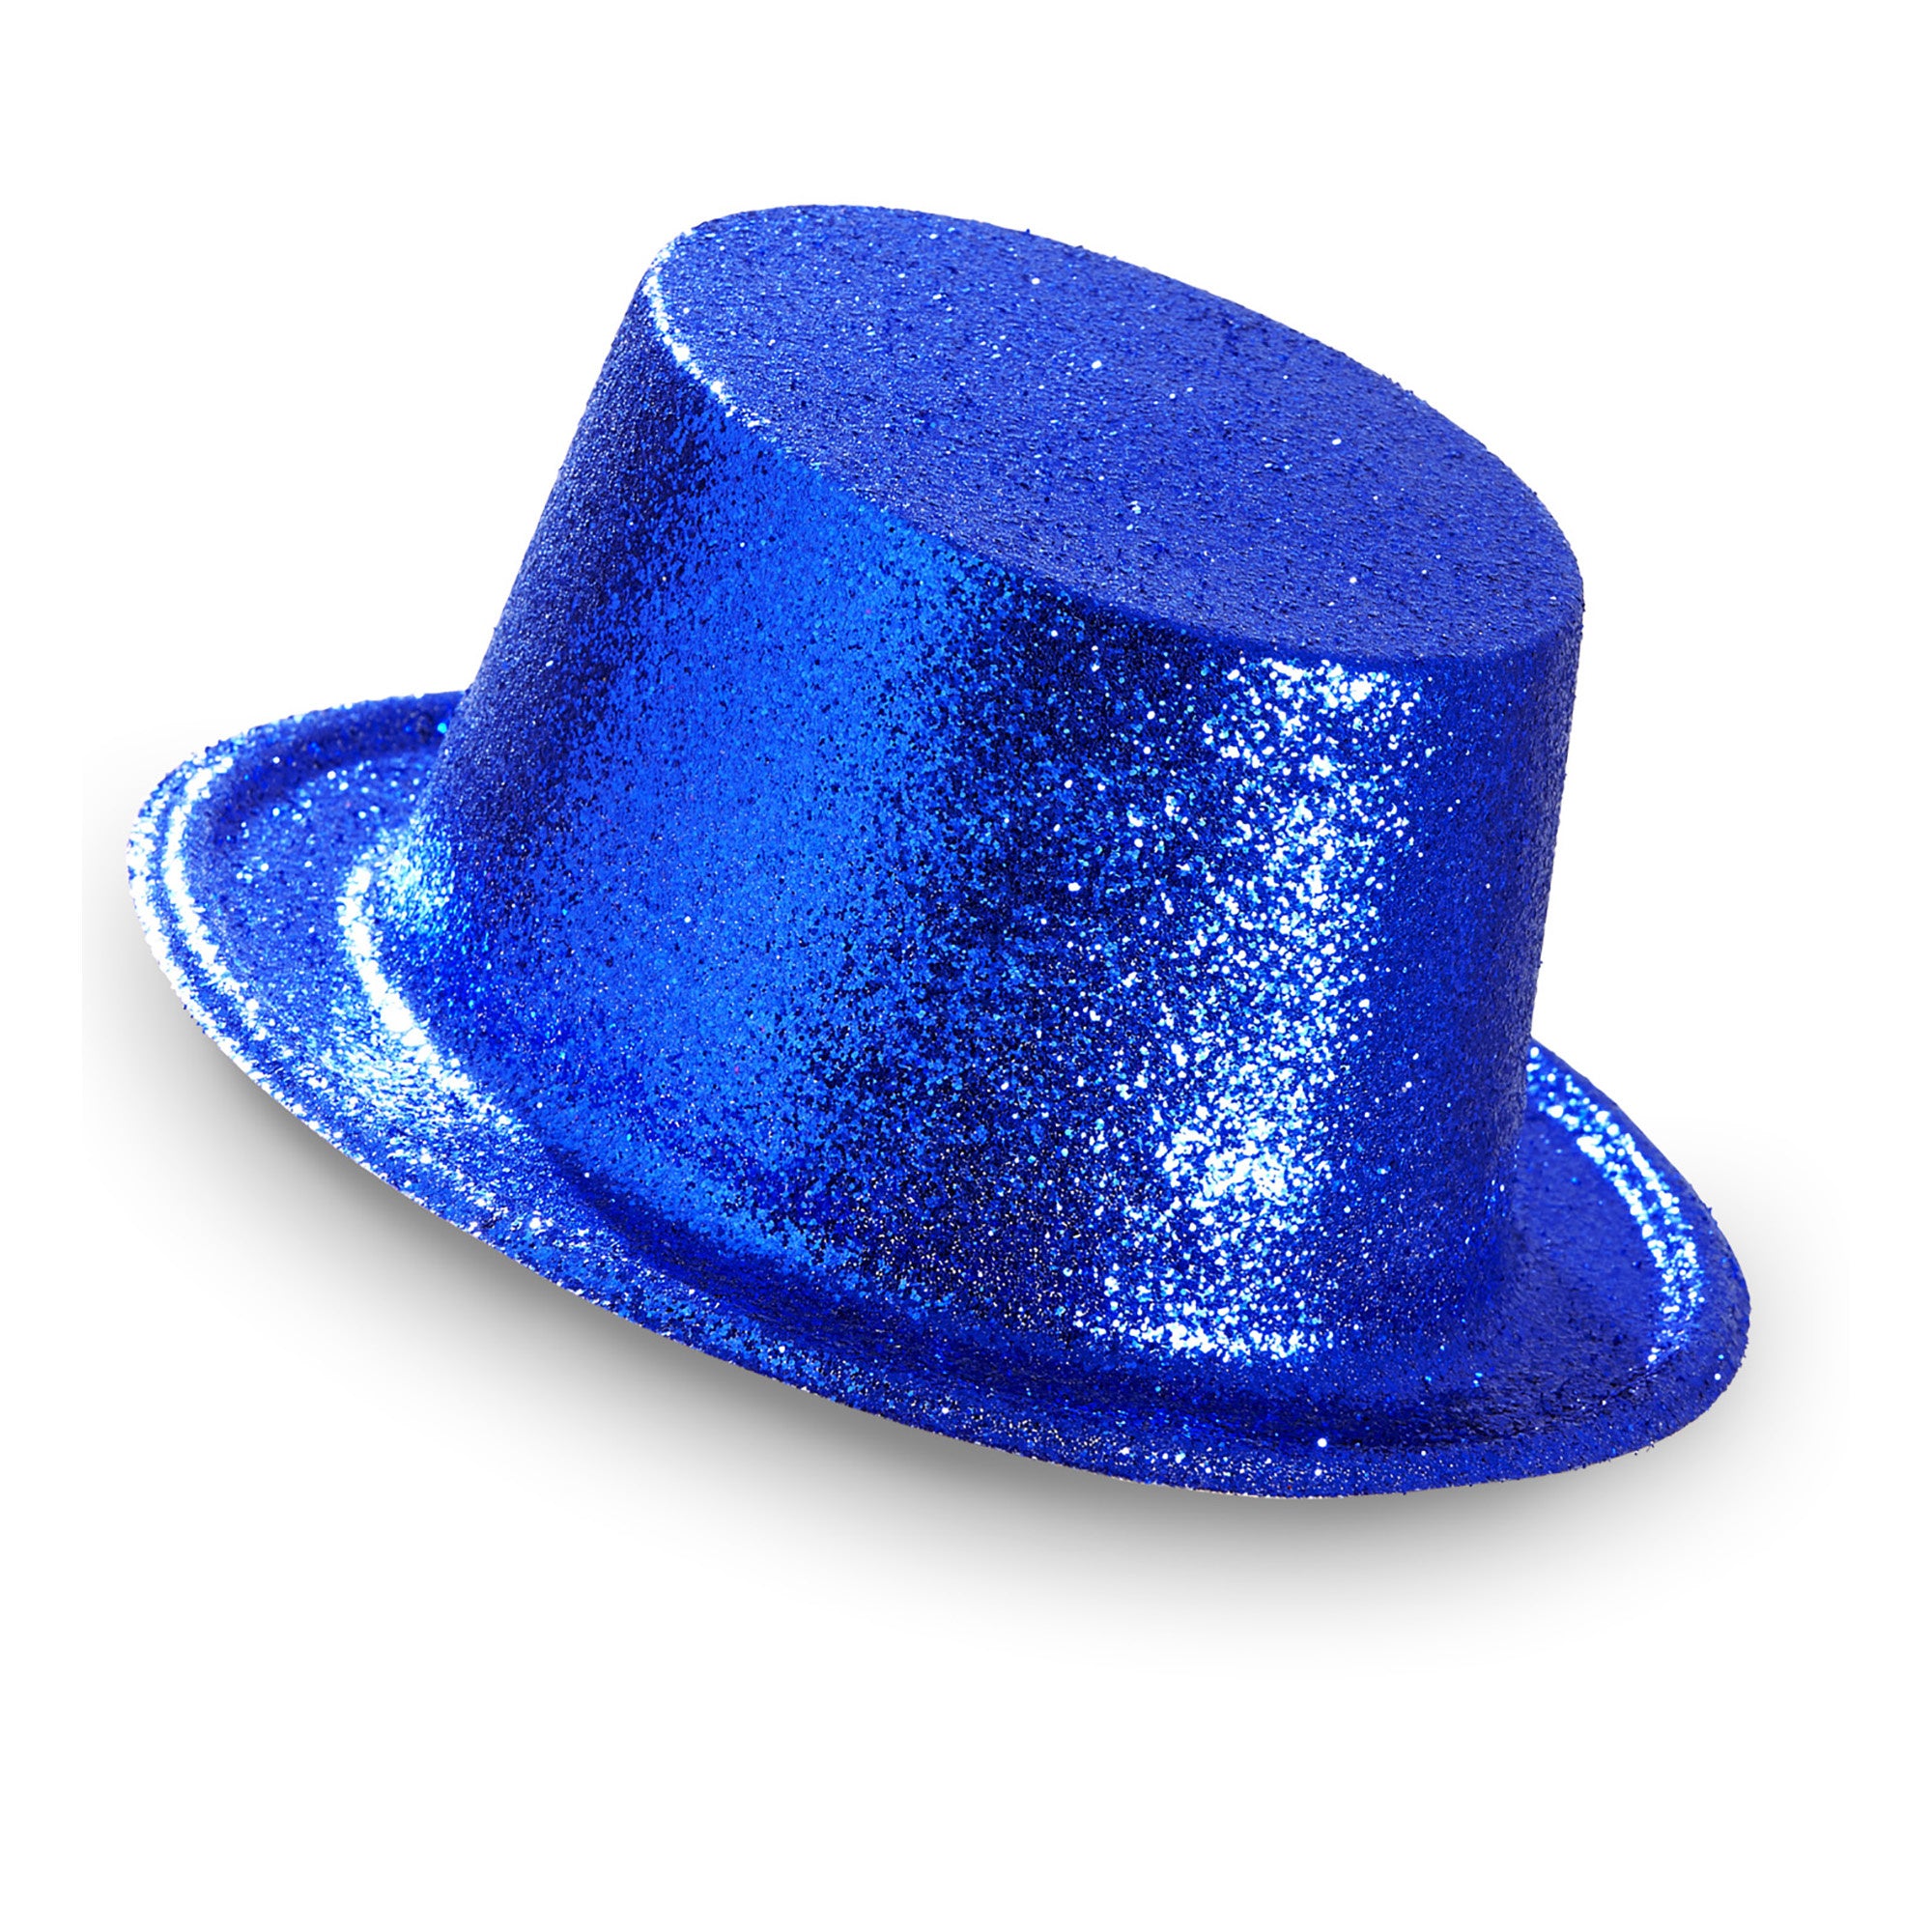 Widmann -Showmaster Glitter Hoge Hoed, Blauw - blauw - Carnavalskleding - Verkleedkleding